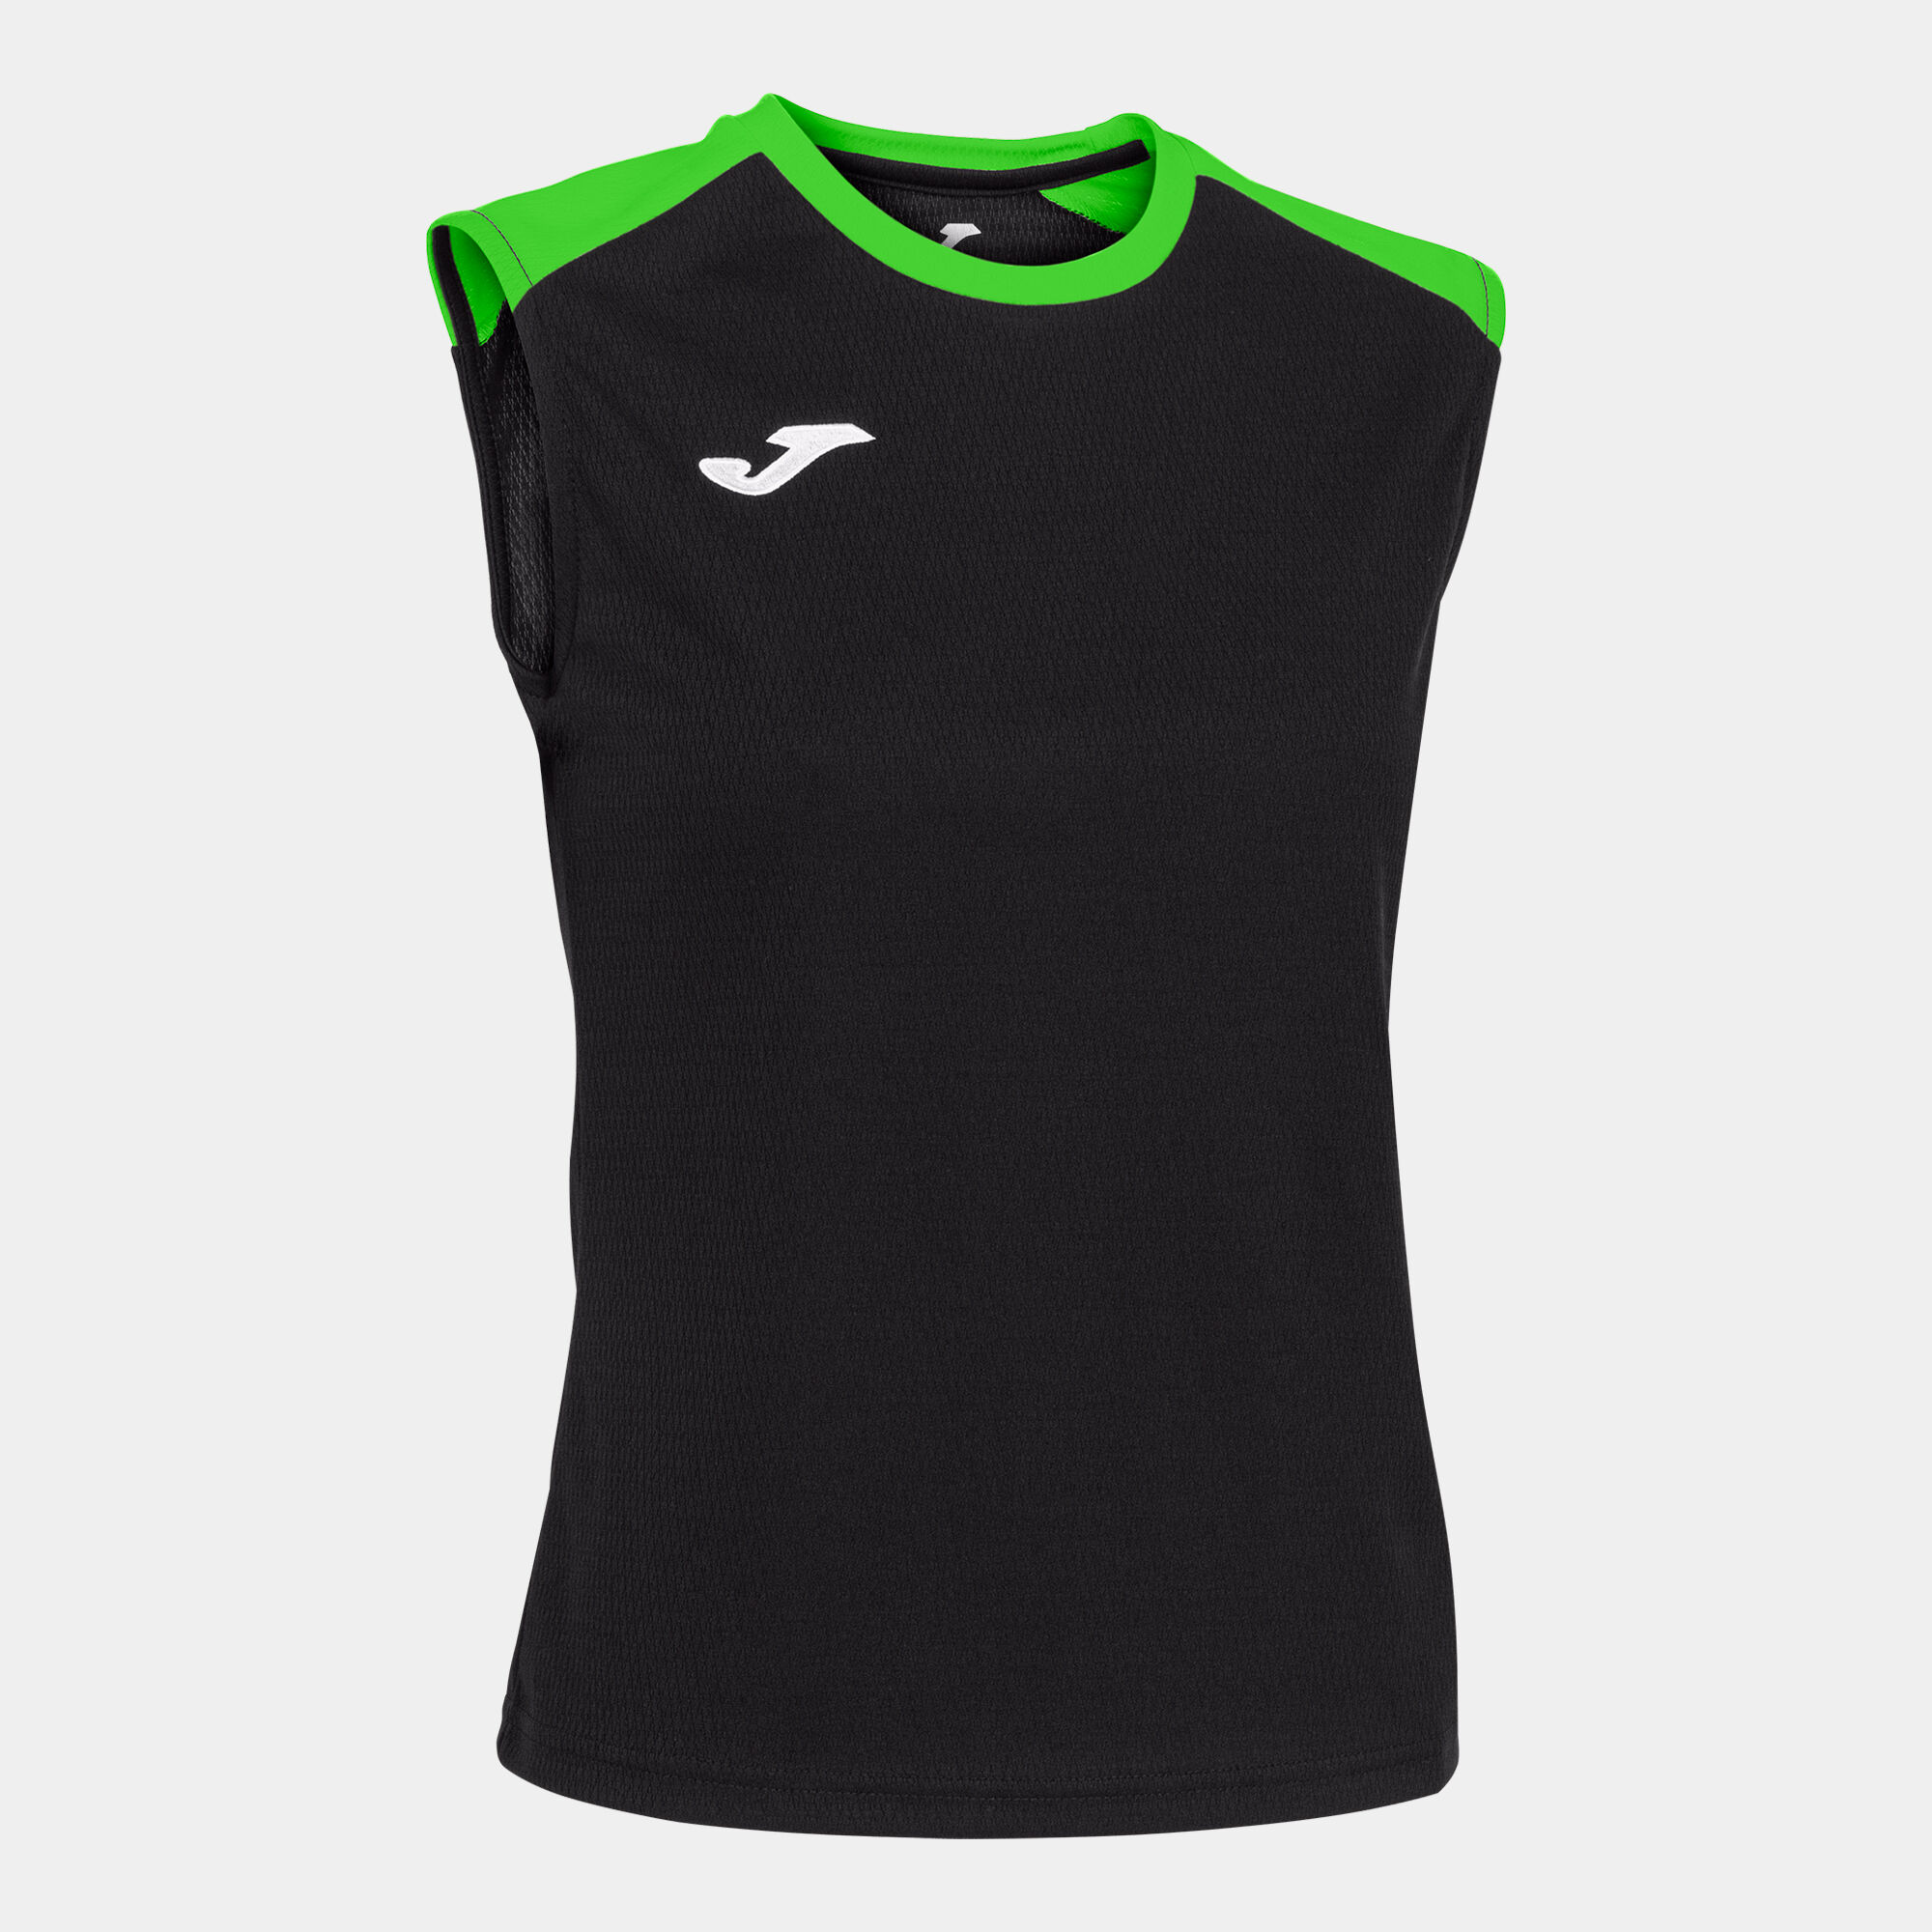 T-shirt de alça mulher Eco Championship preto verde fluorescente